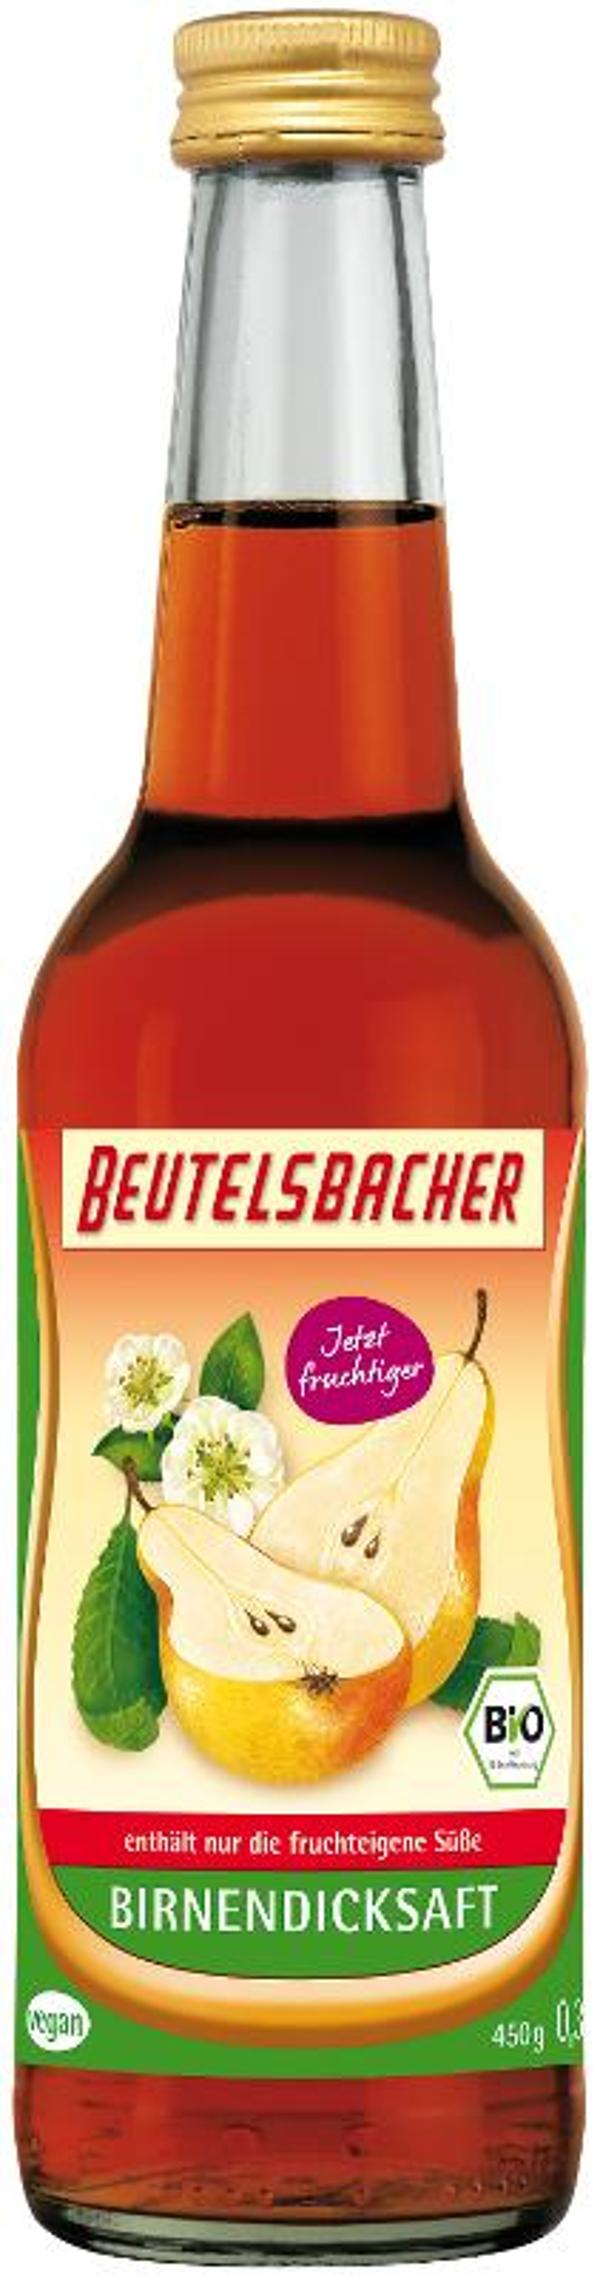 Produktfoto zu Birnen-Dicksaft 330 ml BEUTELSBACHER